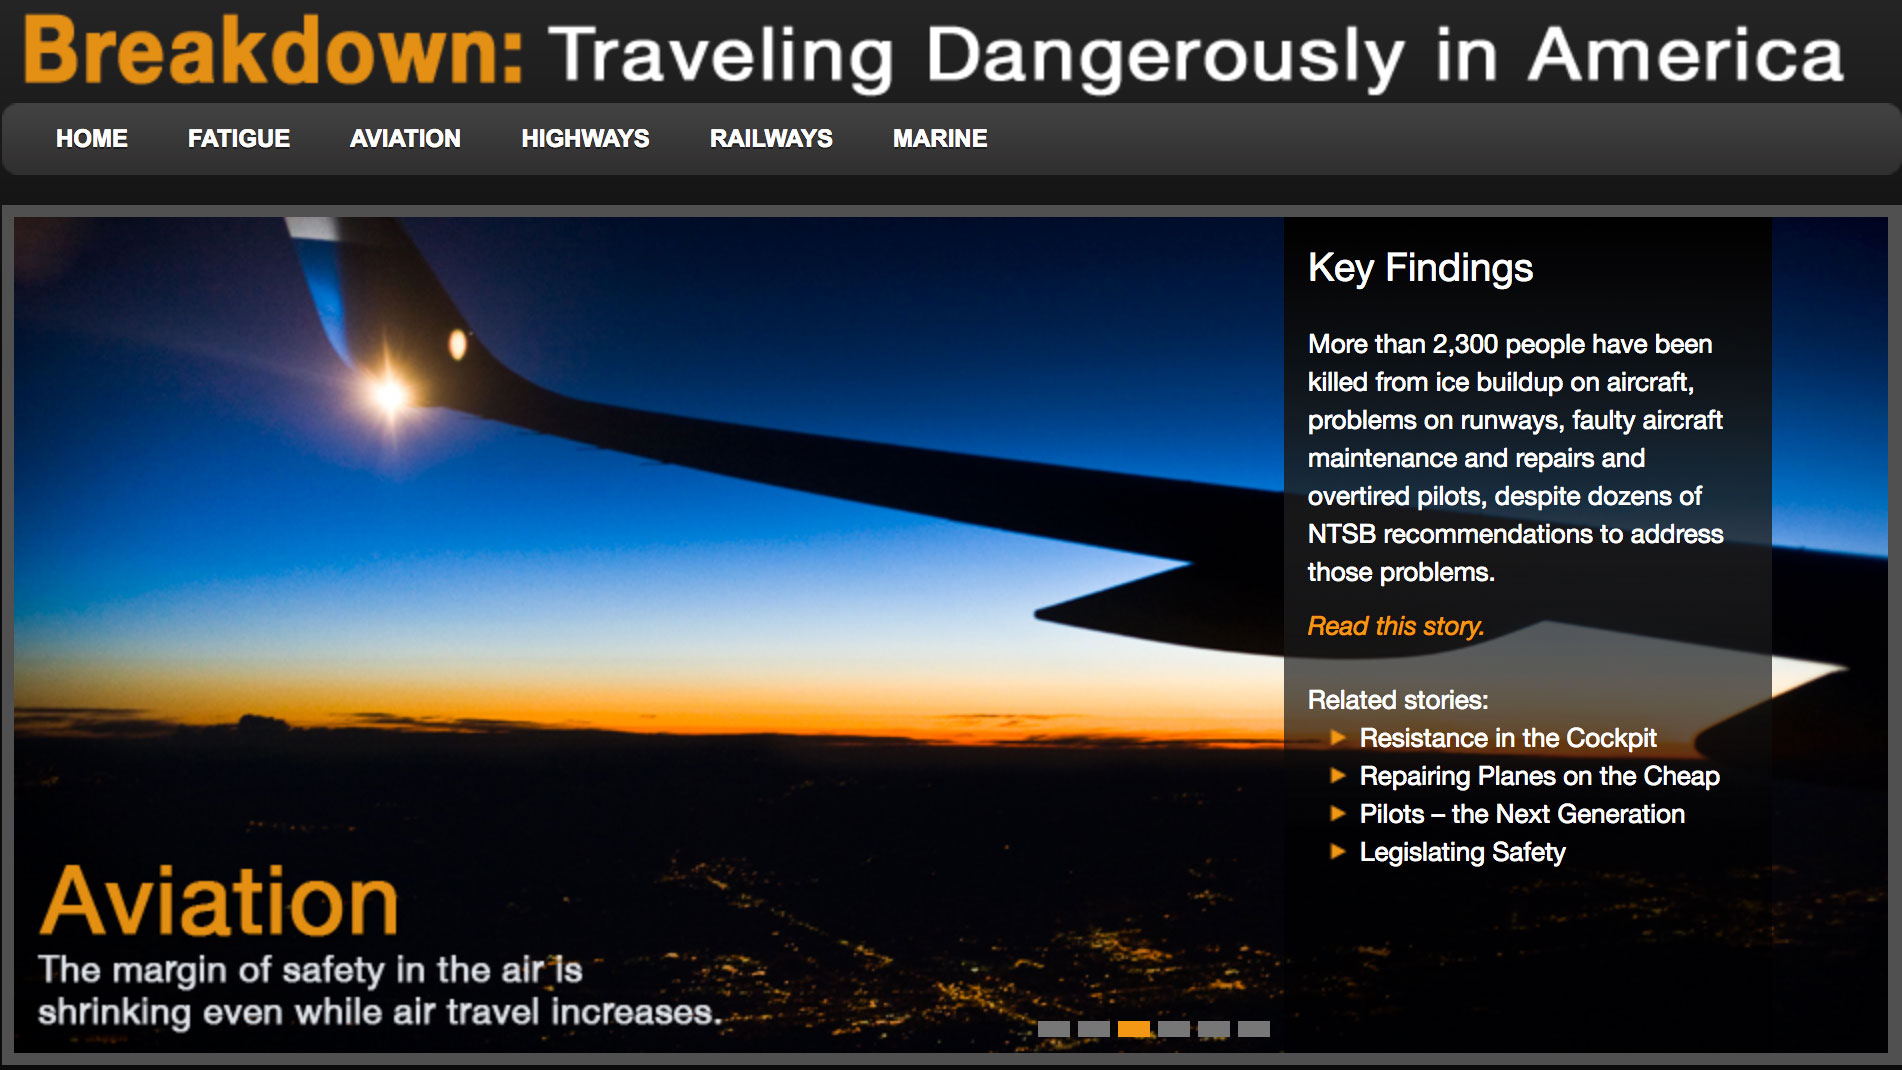 Breakdown: Traveling Dangerously in America